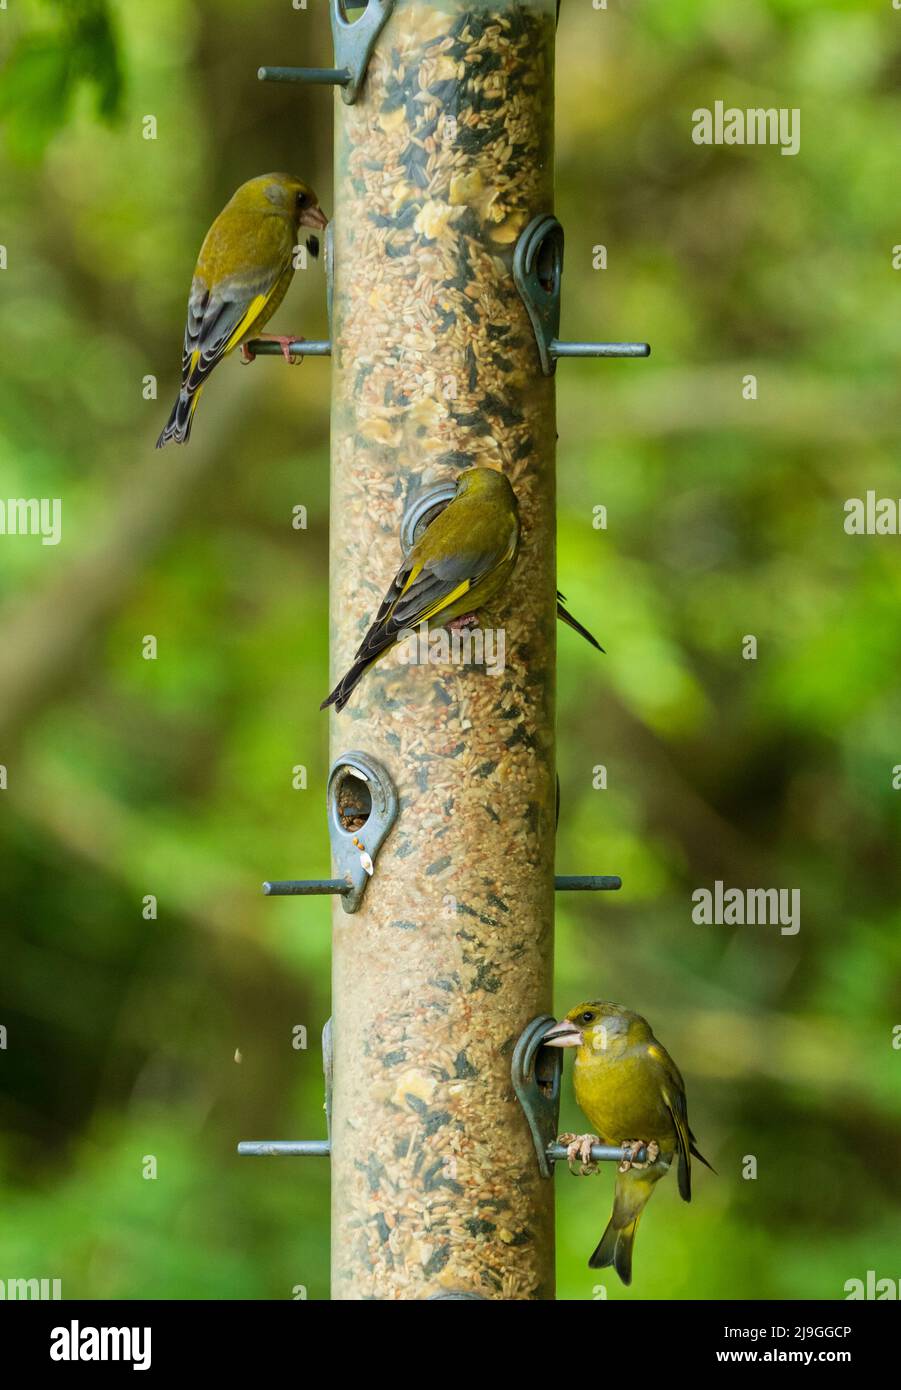 Trio di verdfinches autoctoni del Regno Unito, giallo e verde, Chloris chloris, che si nutrono di una miscela di semi di girasole e semi di semi di girasole Foto Stock